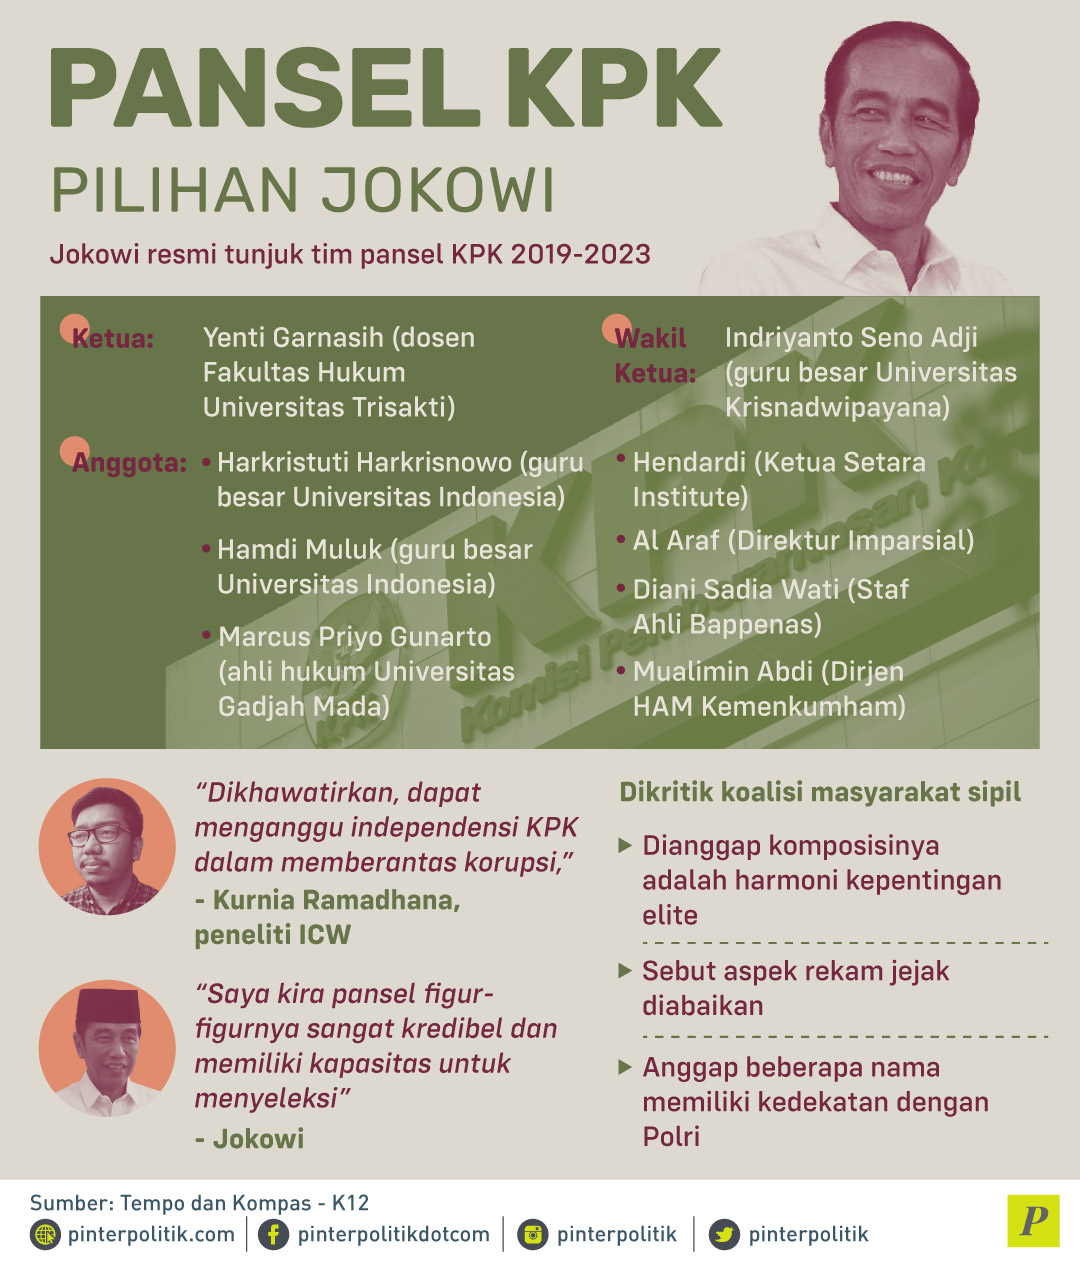 Jokowi resmi tunjuk tim pansel KPK 2019-2023